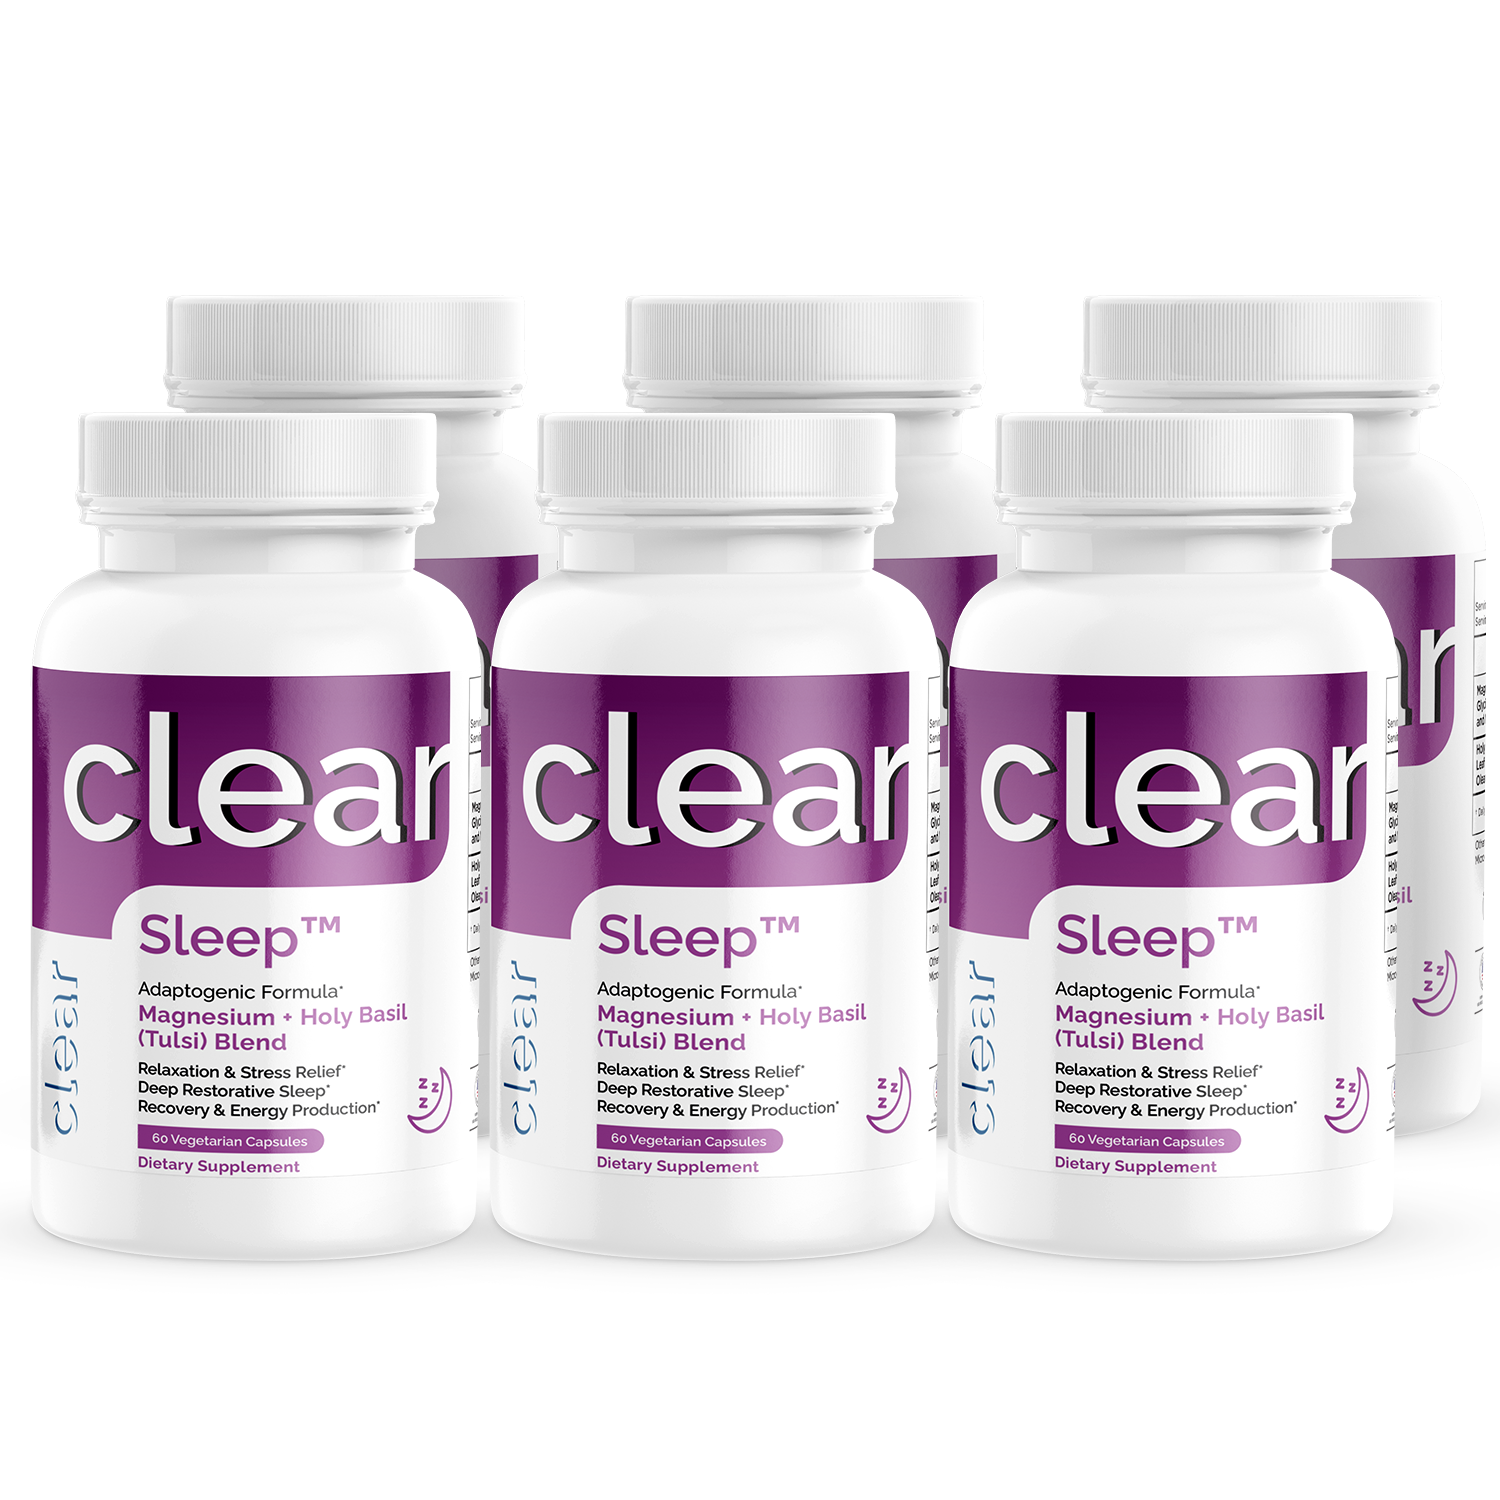 Clear Sleep